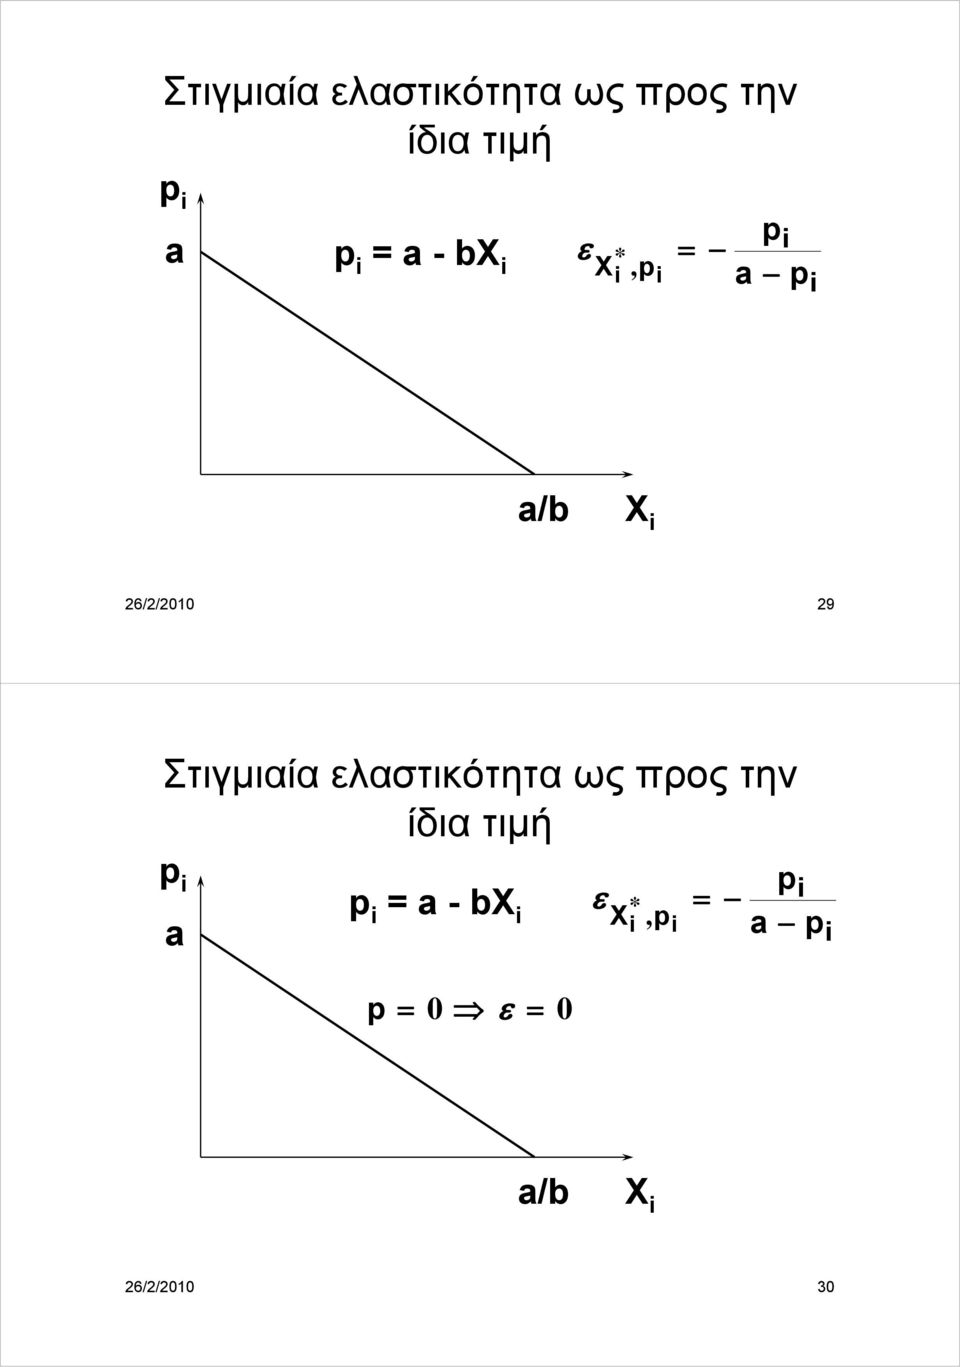 - bx ε X * =, p p = 0 ε = 0 p a p a/b X 26/2/2010